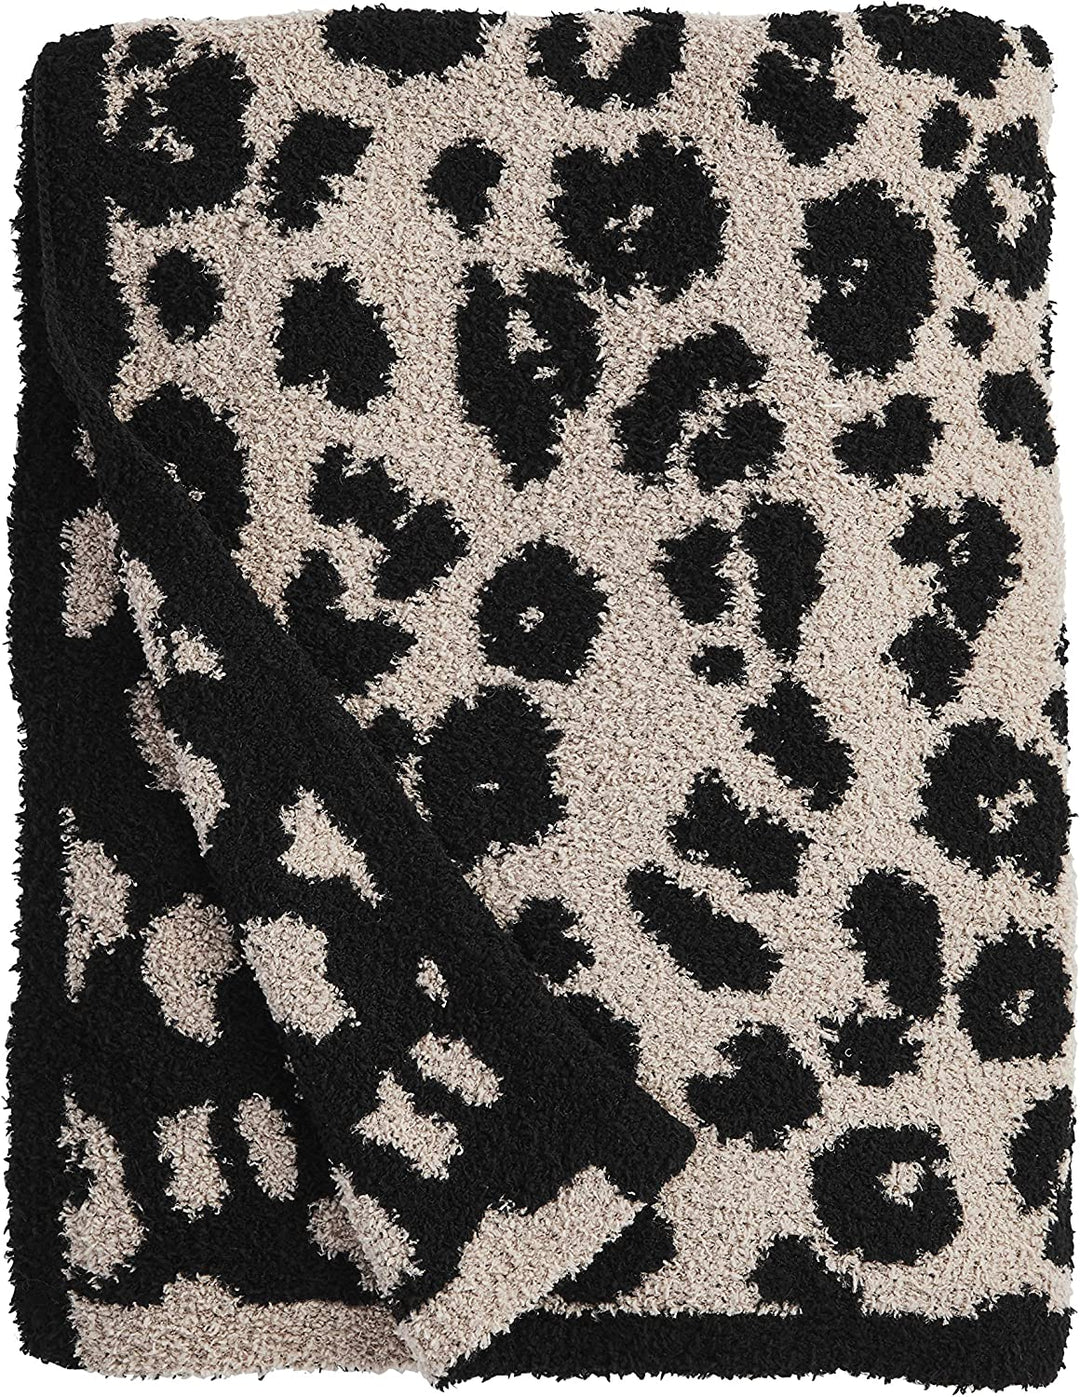 Fuzzy Leopard Blanket